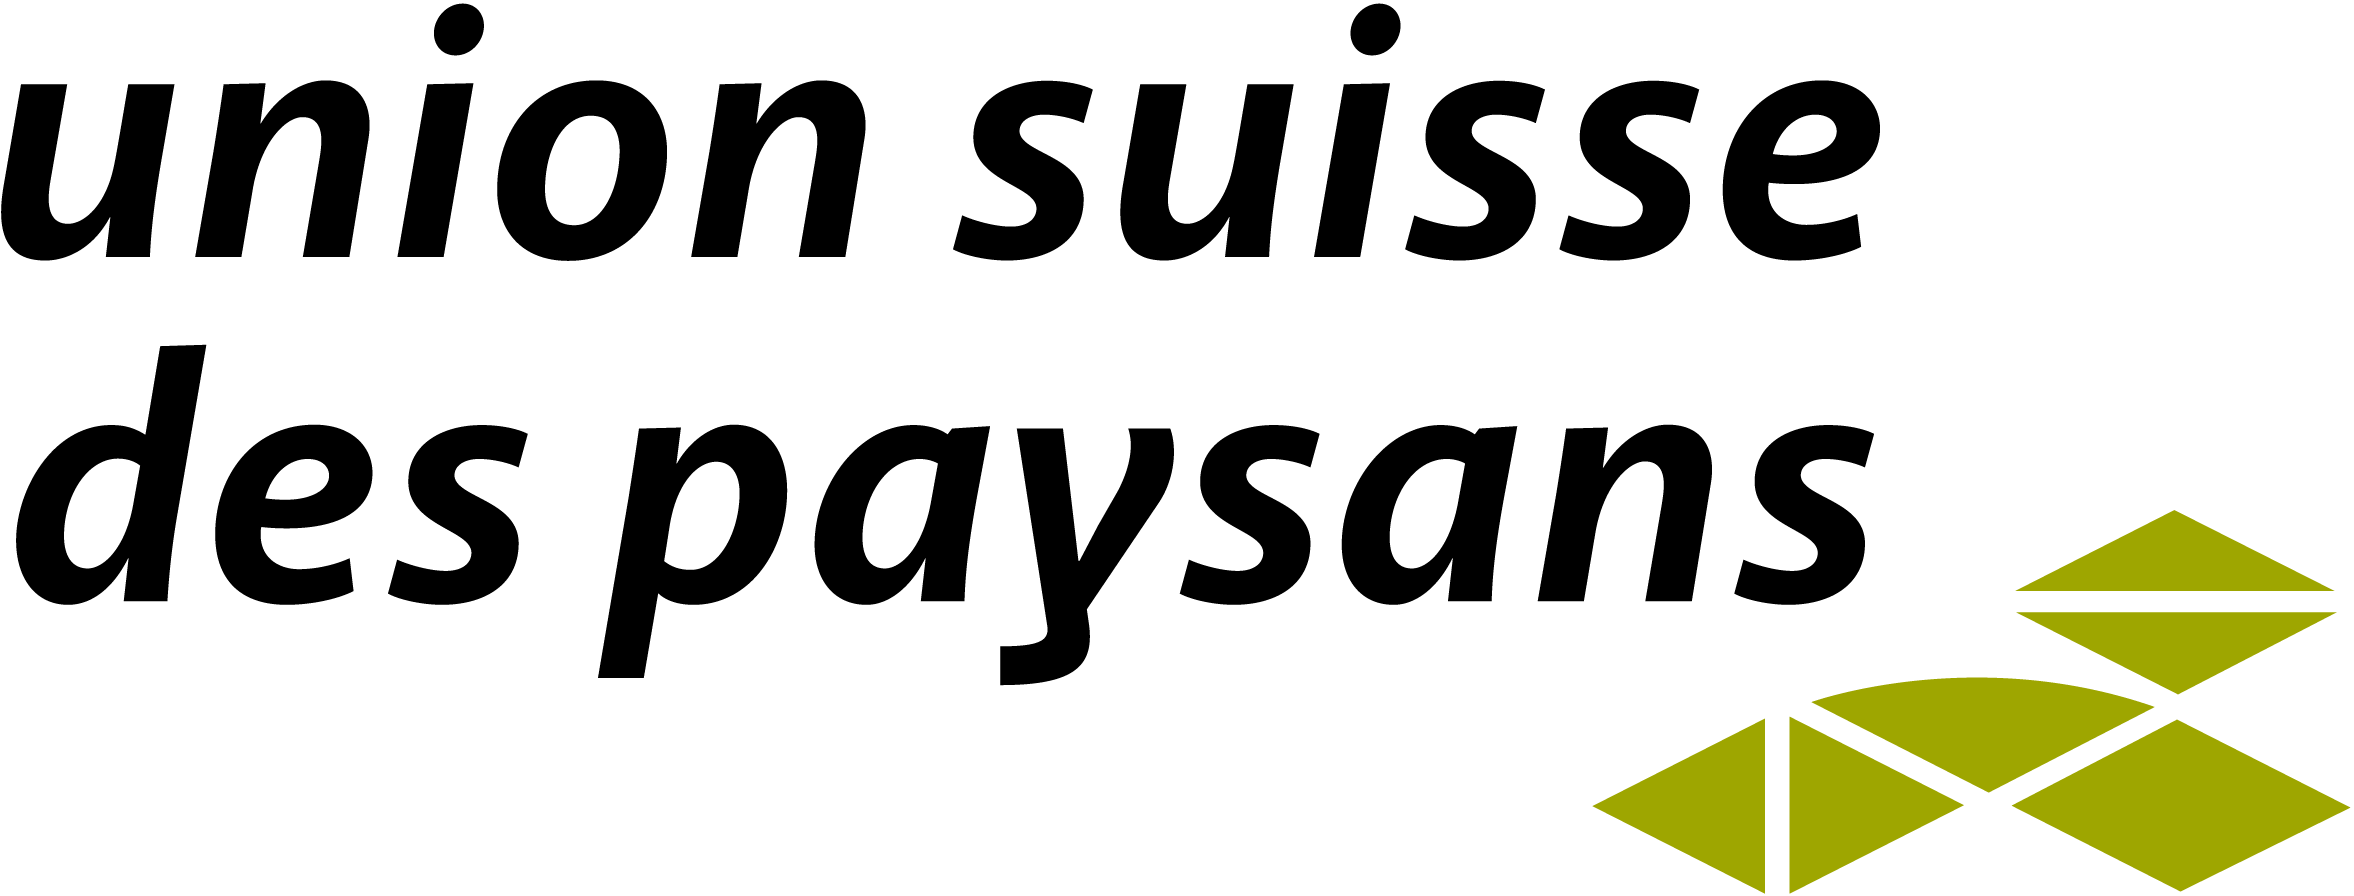 logo FSB - membre fondateur d'AgroImpact pour la durabilité de l'agriculture suisse